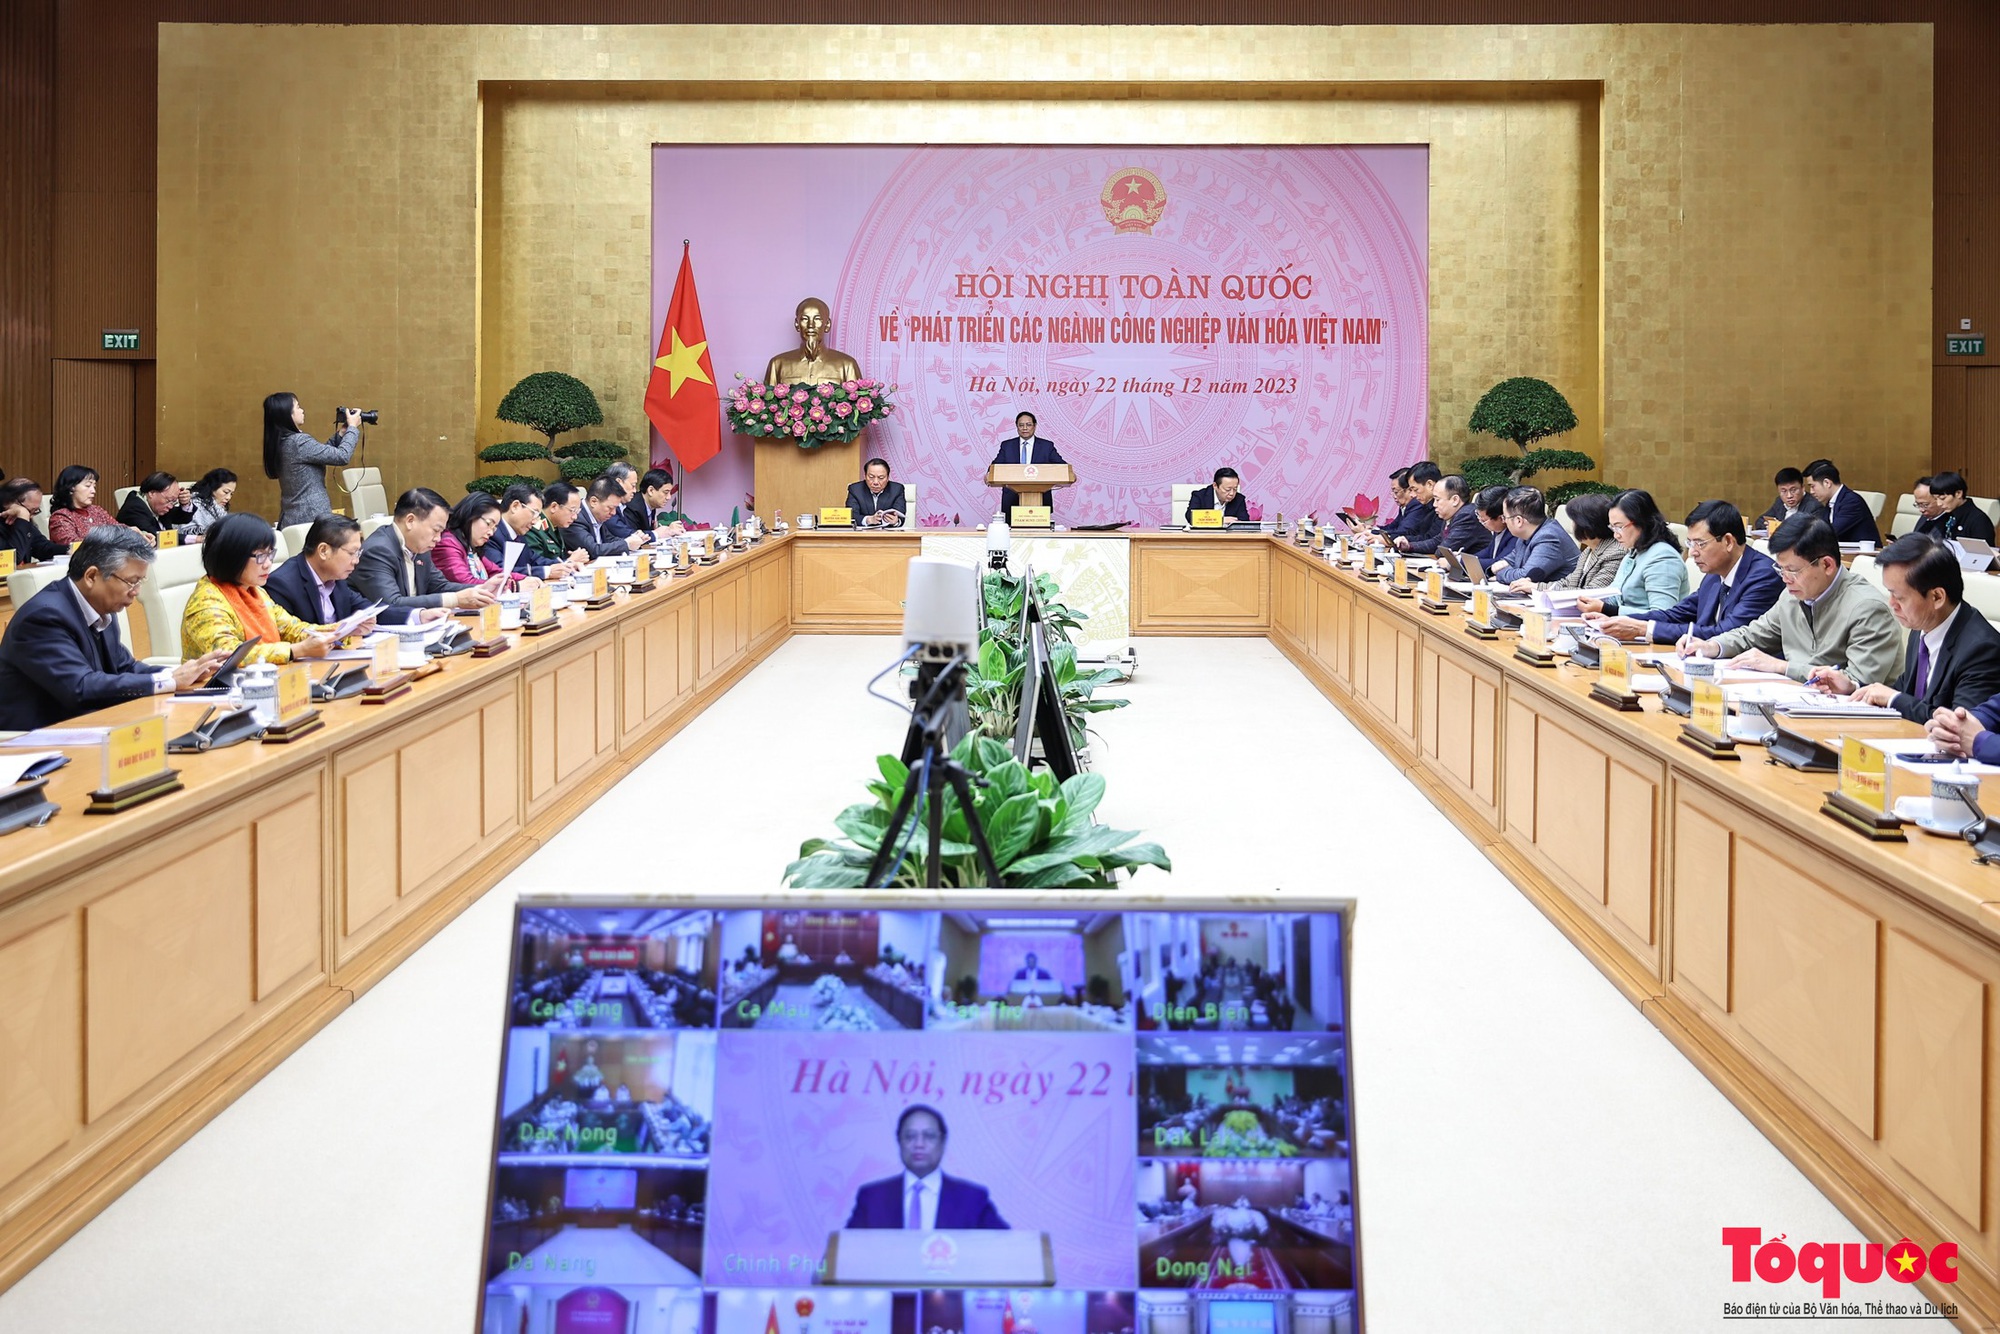 Chùm ảnh: Hội nghị toàn quốc về phát triển các ngành công nghiệp văn hóa Việt Nam - Ảnh 1.